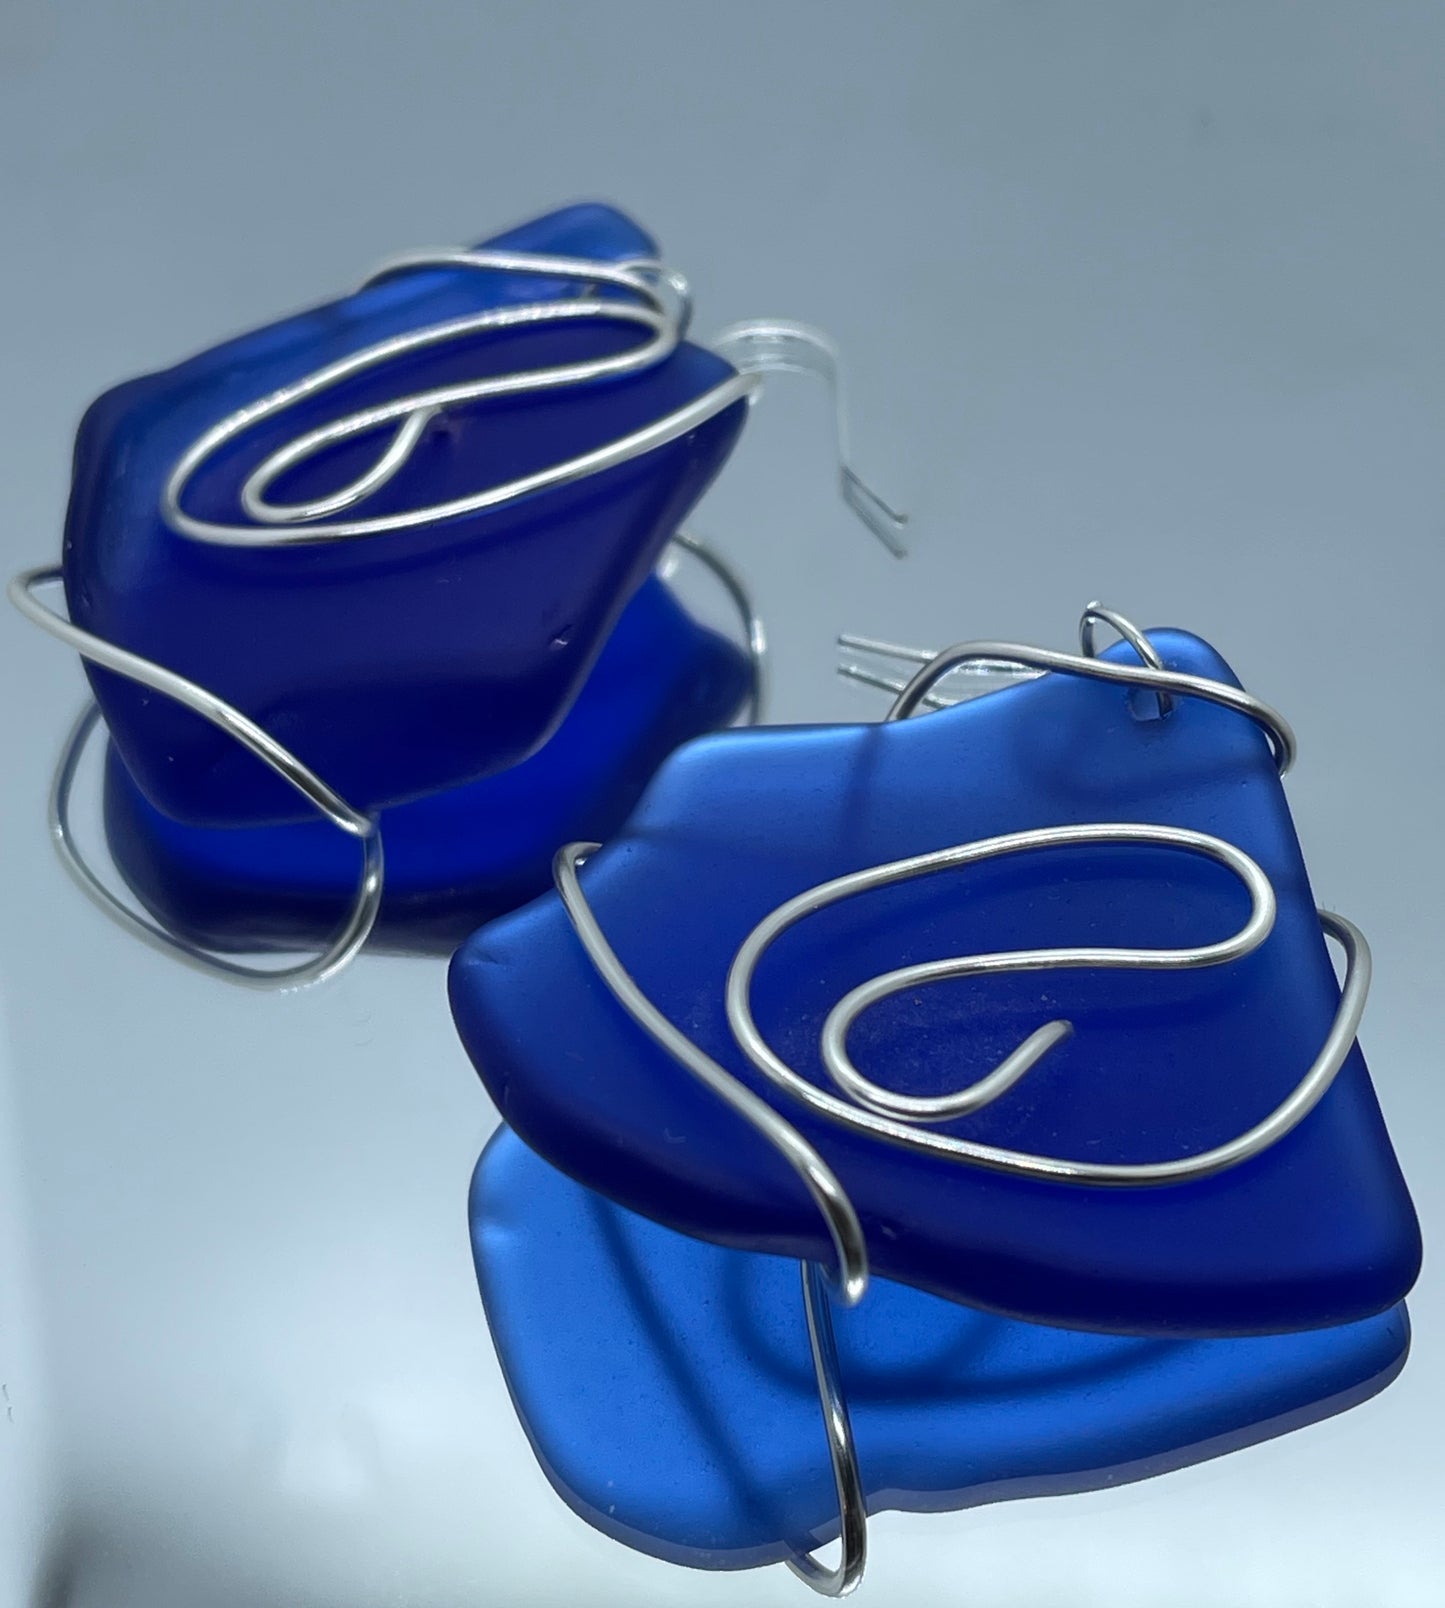 Blue Seaglass entwined in silver wire twists drop earrings